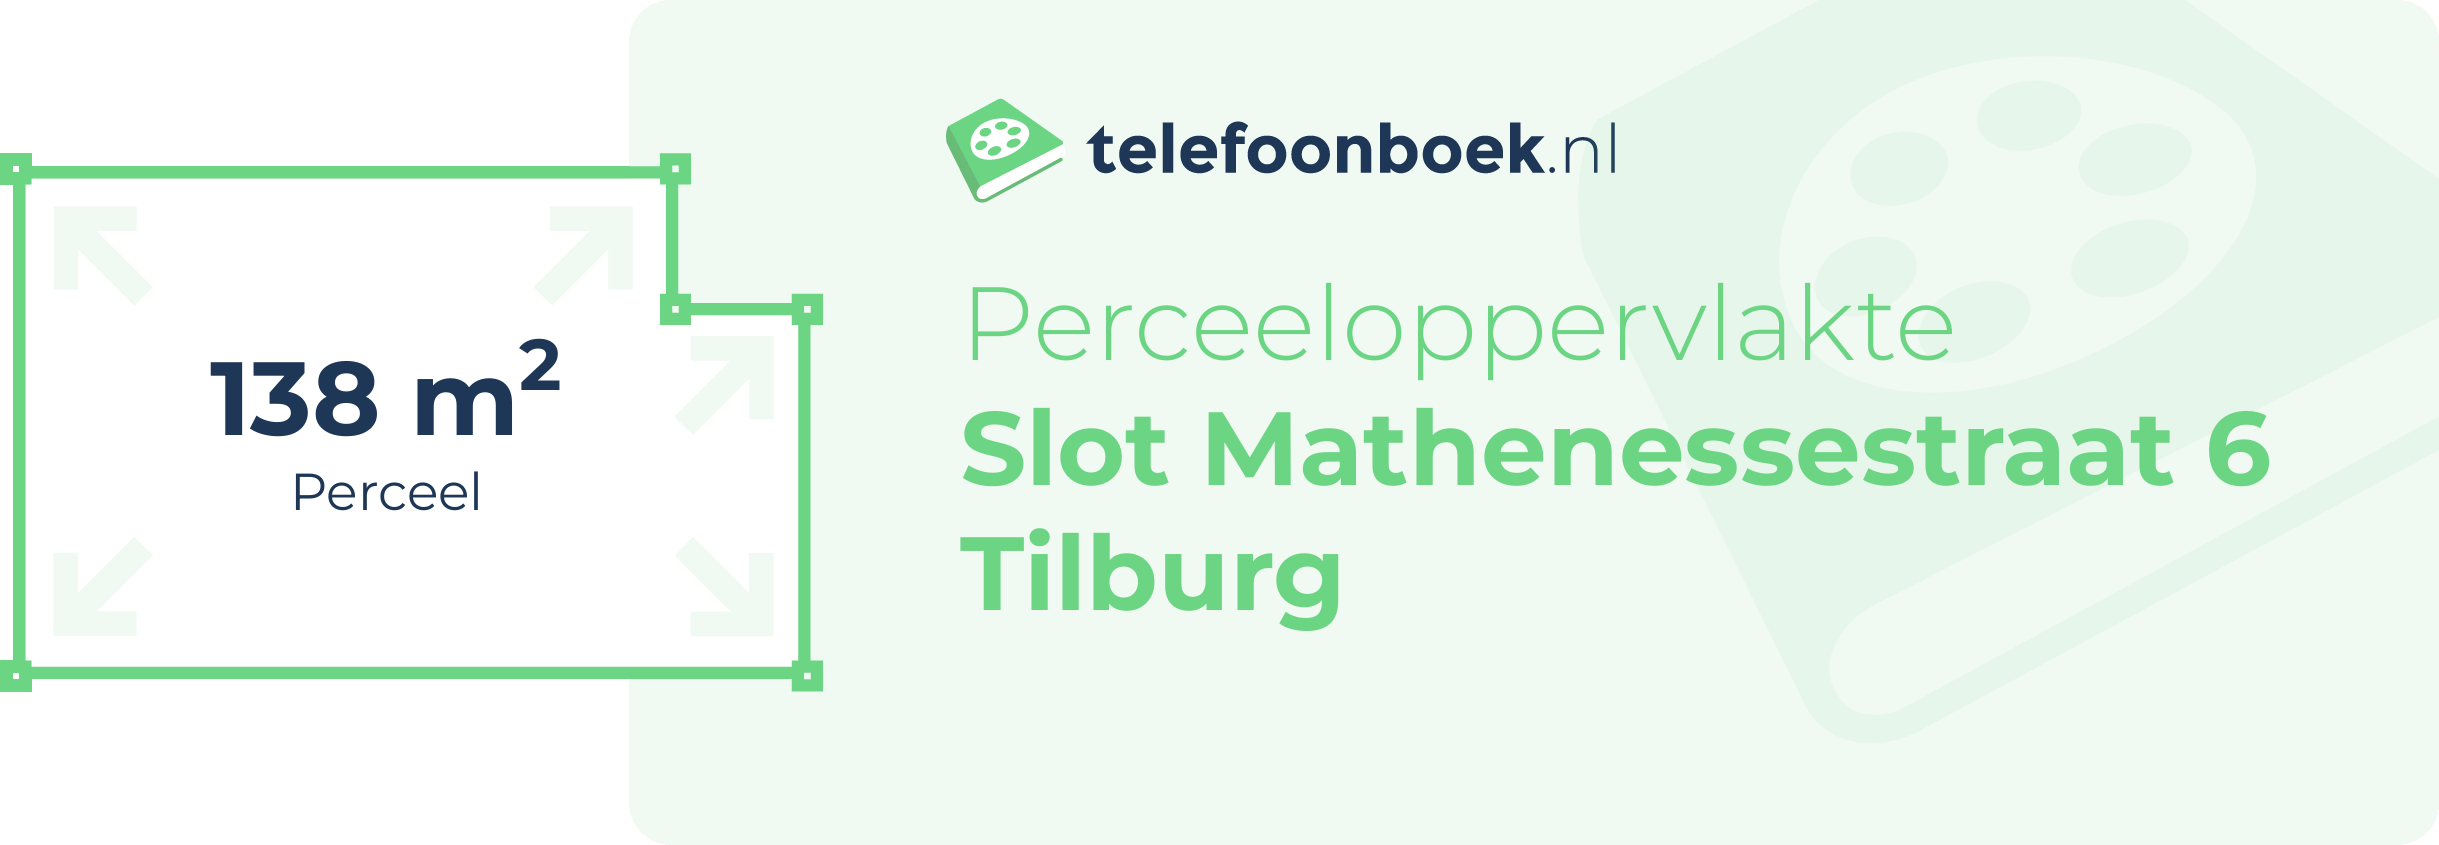 Perceeloppervlakte Slot Mathenessestraat 6 Tilburg